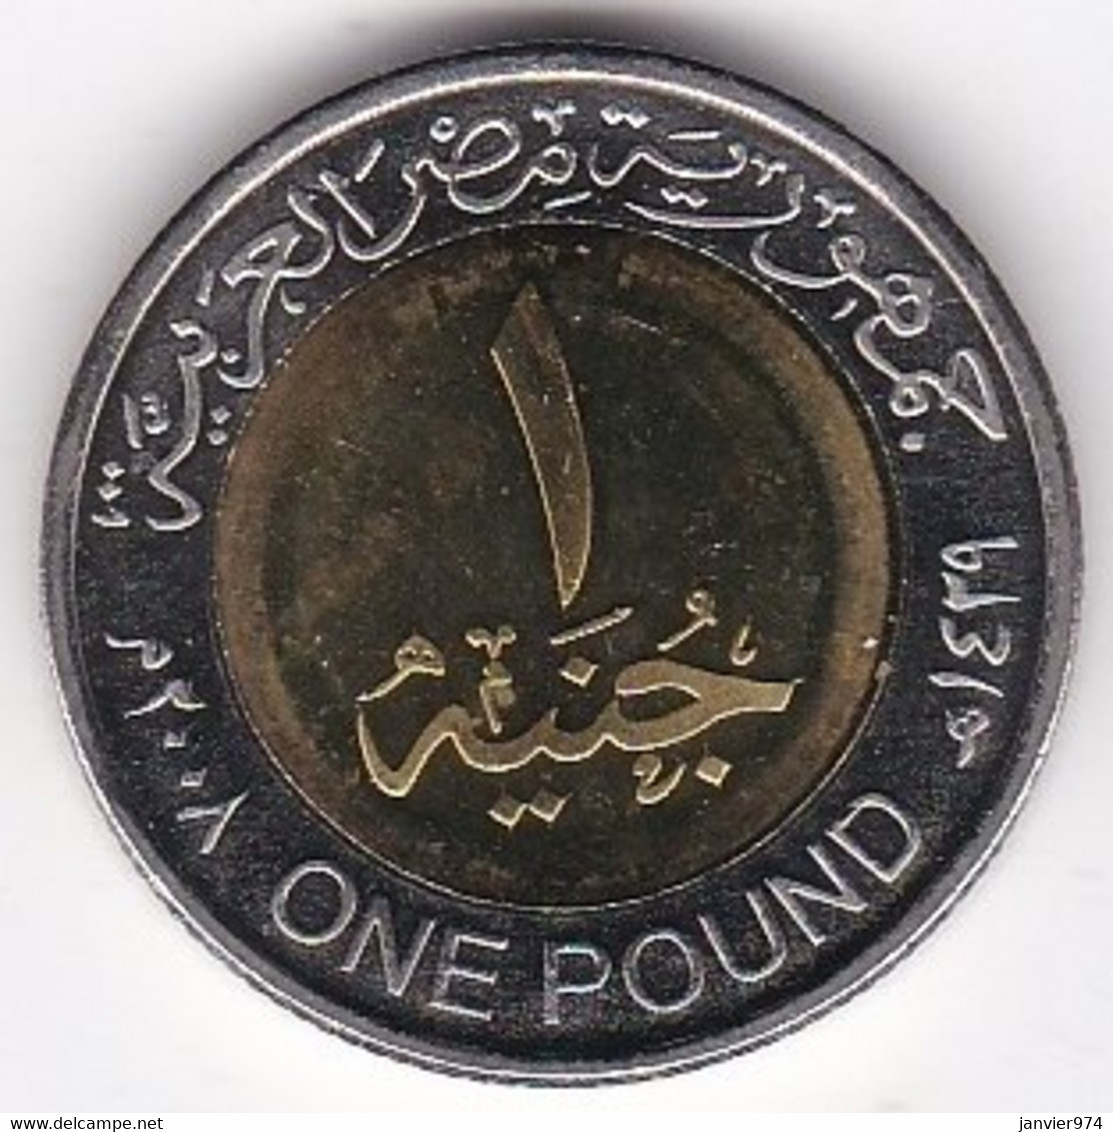 Egypte, 1 Pound AH 1429 – 2008, Masque Funéraire De Toutankhamon, Bimétallique, KM# 940a , Neuve UNC - Egypte